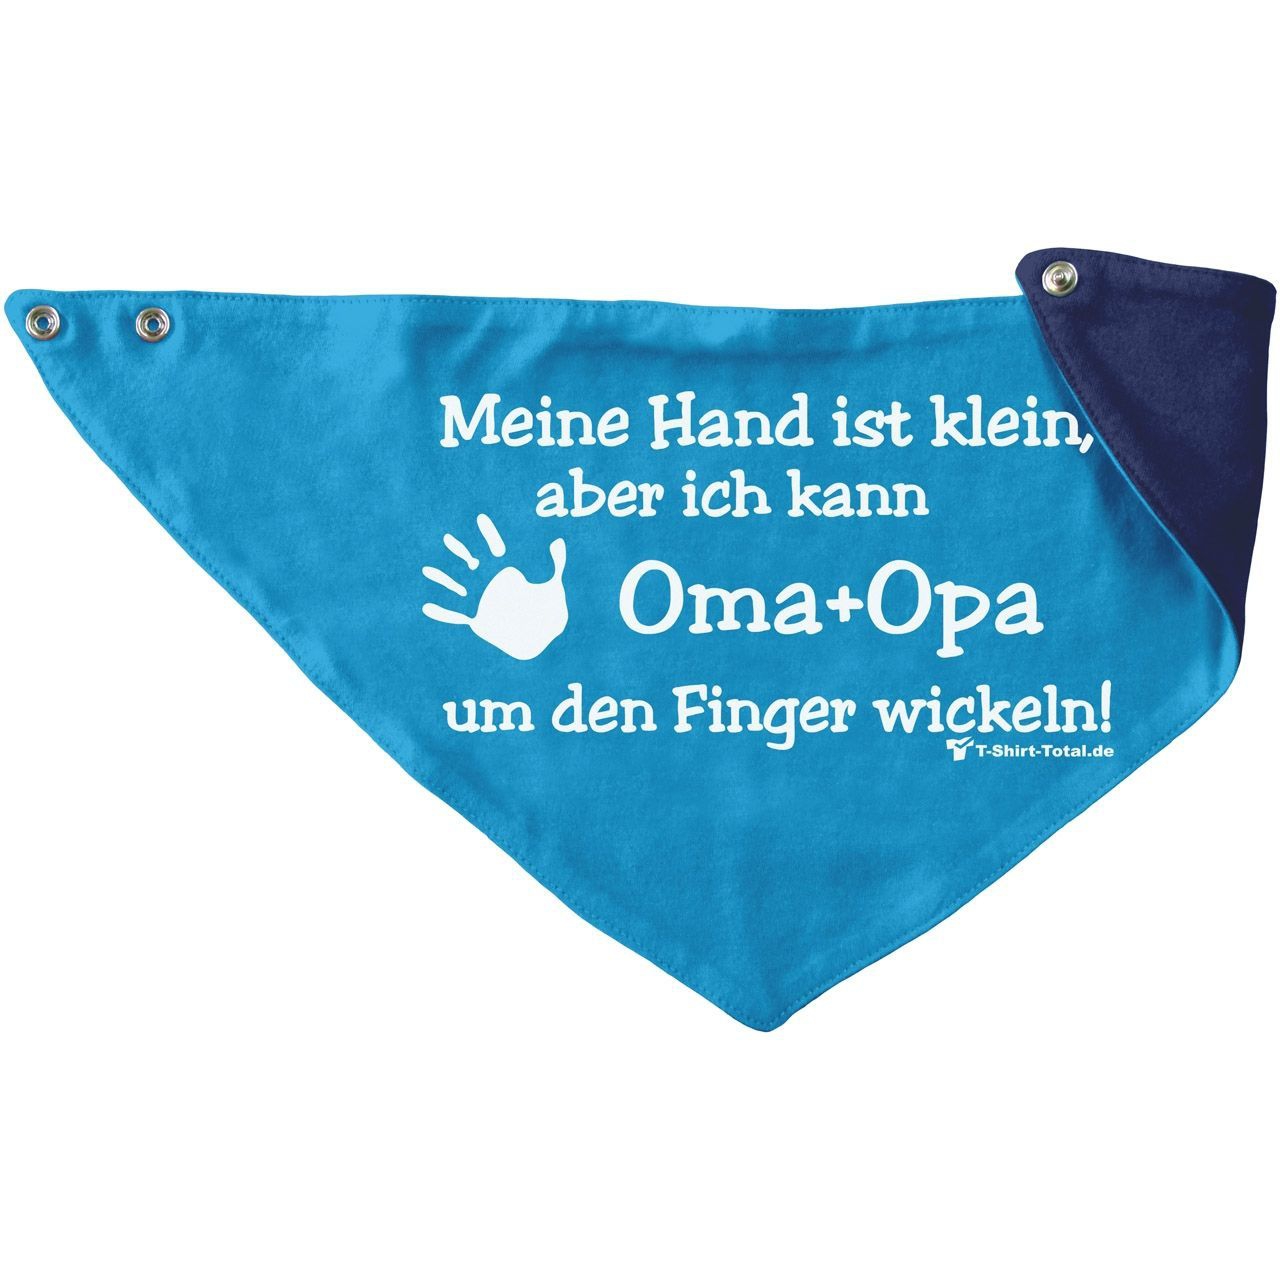 Kleine Hand Oma Opa Kinder Dreieckstuch türkis/navy